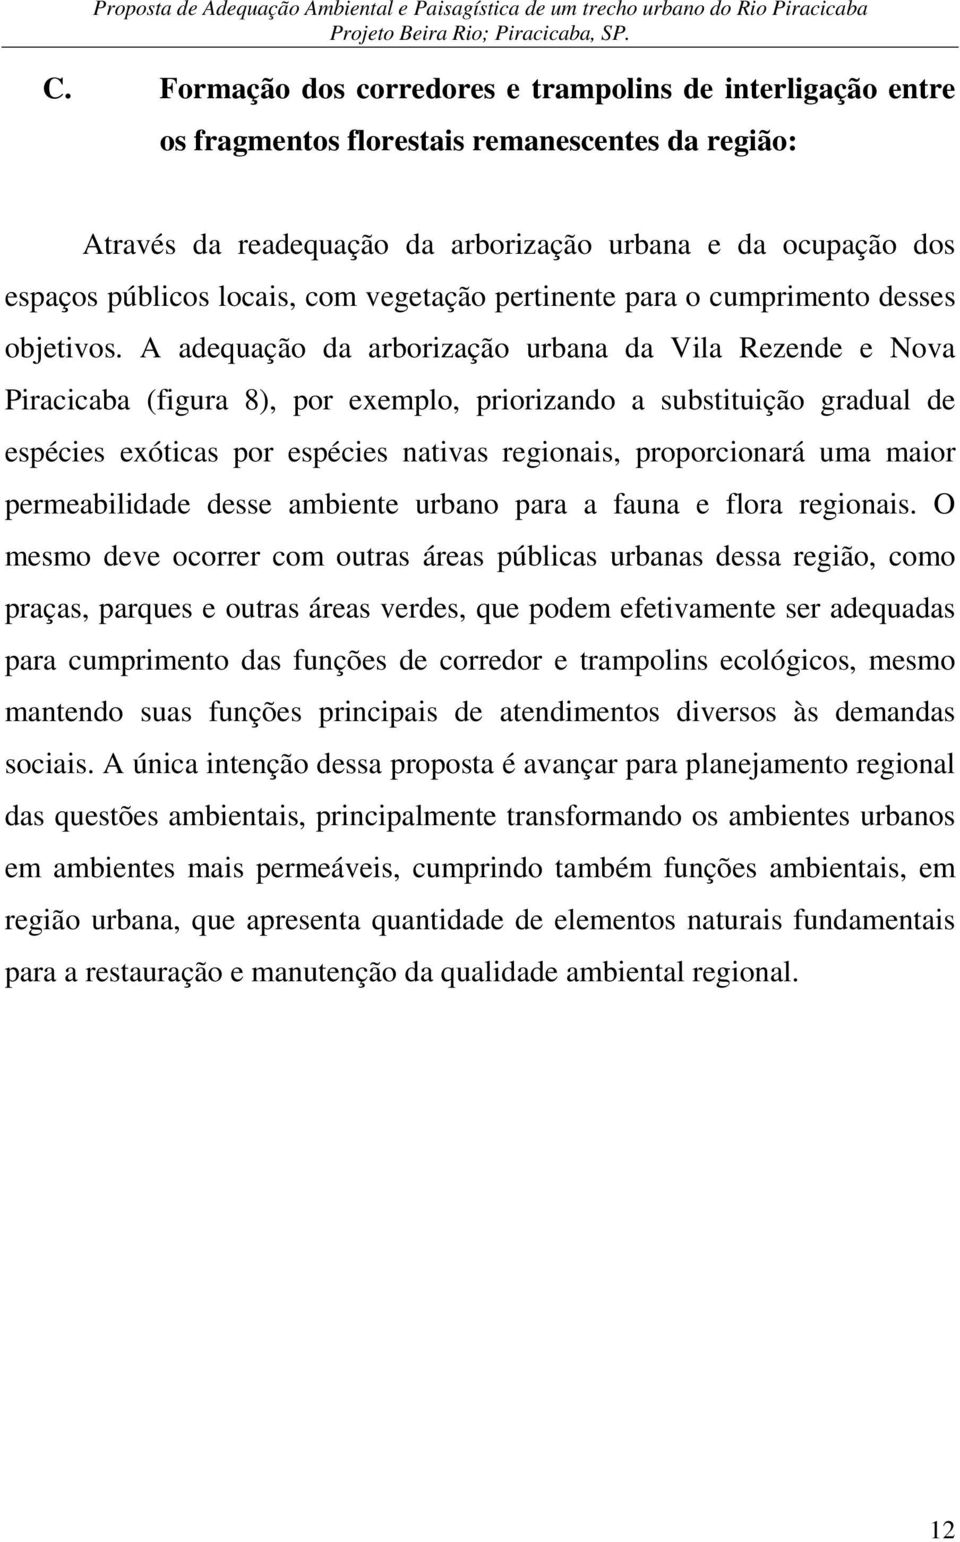 A adequação da arborização urbana da Vila Rezende e Nova Piracicaba (figura 8), por exemplo, priorizando a substituição gradual de espécies exóticas por espécies nativas regionais, proporcionará uma